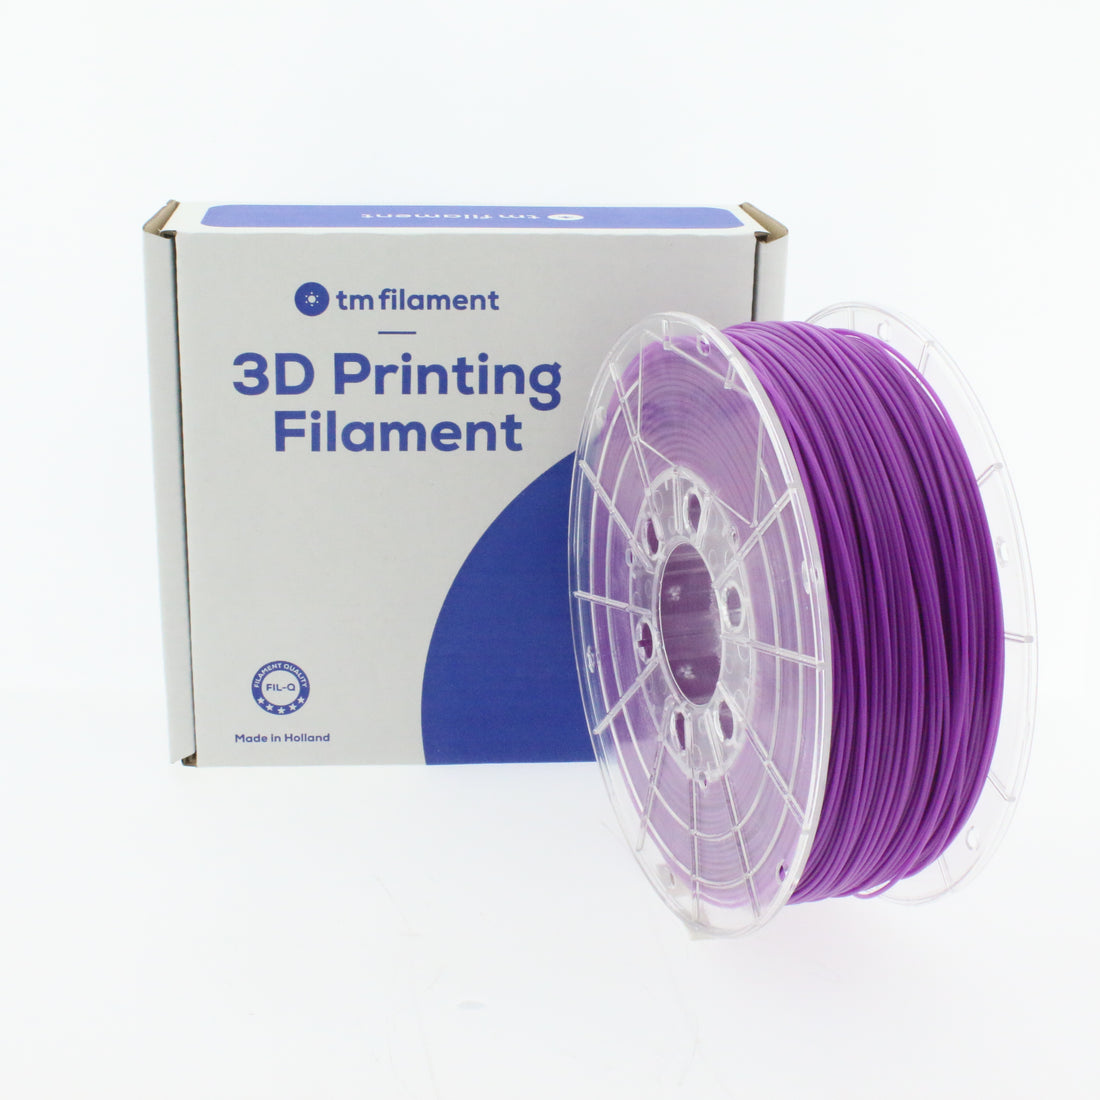 3D Filament kopen bij tm3dfilament: Een Uitgebreid Overzicht